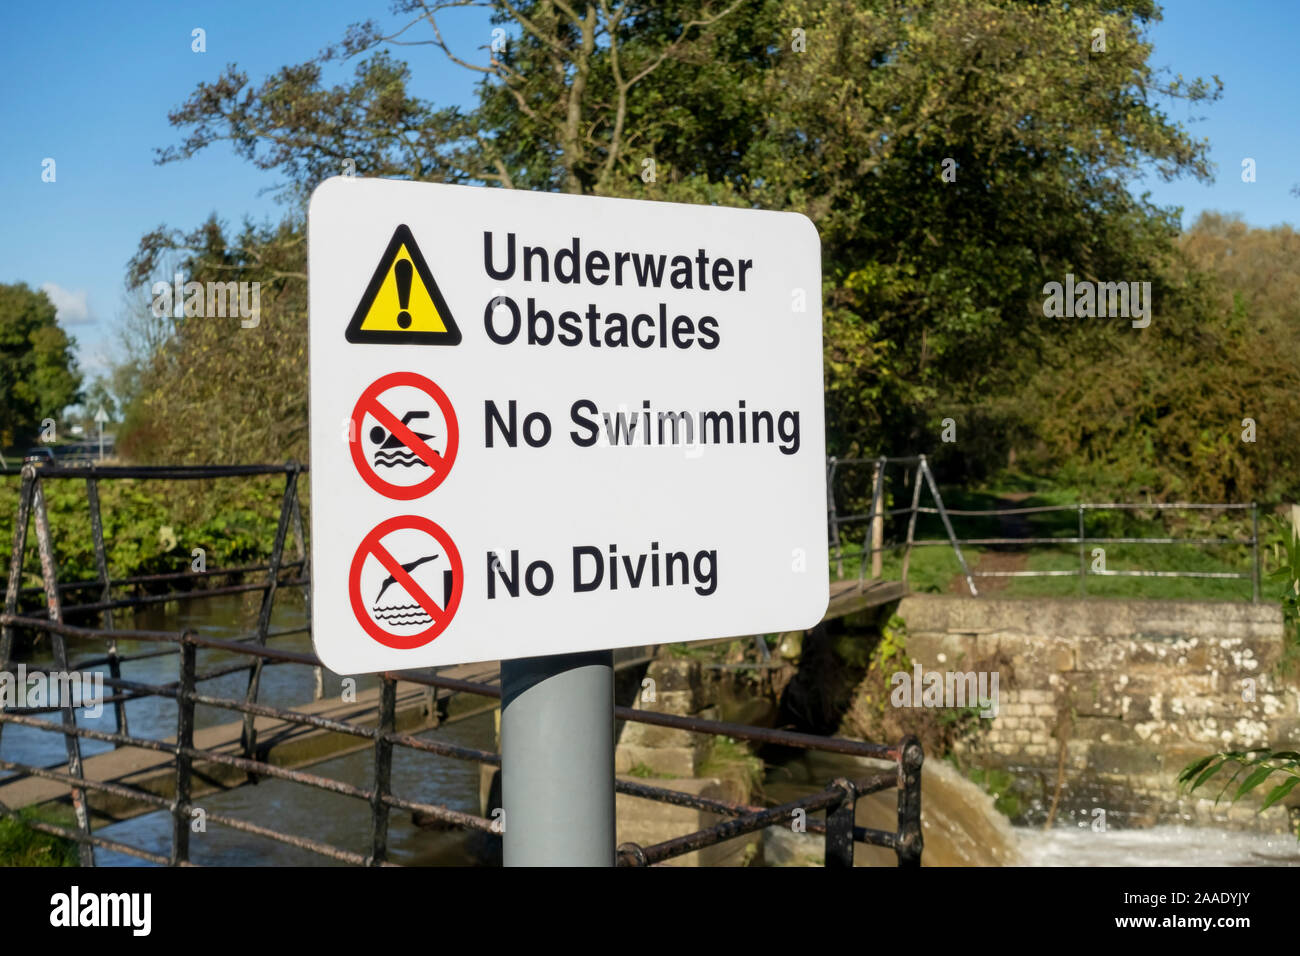 Nahaufnahme von Unterwasser-Hindernissen kein Schwimmen kein Warnschild beim Tauchen an einem Flusswasser England UK Vereinigtes Königreich GB Großbritannien Stockfoto